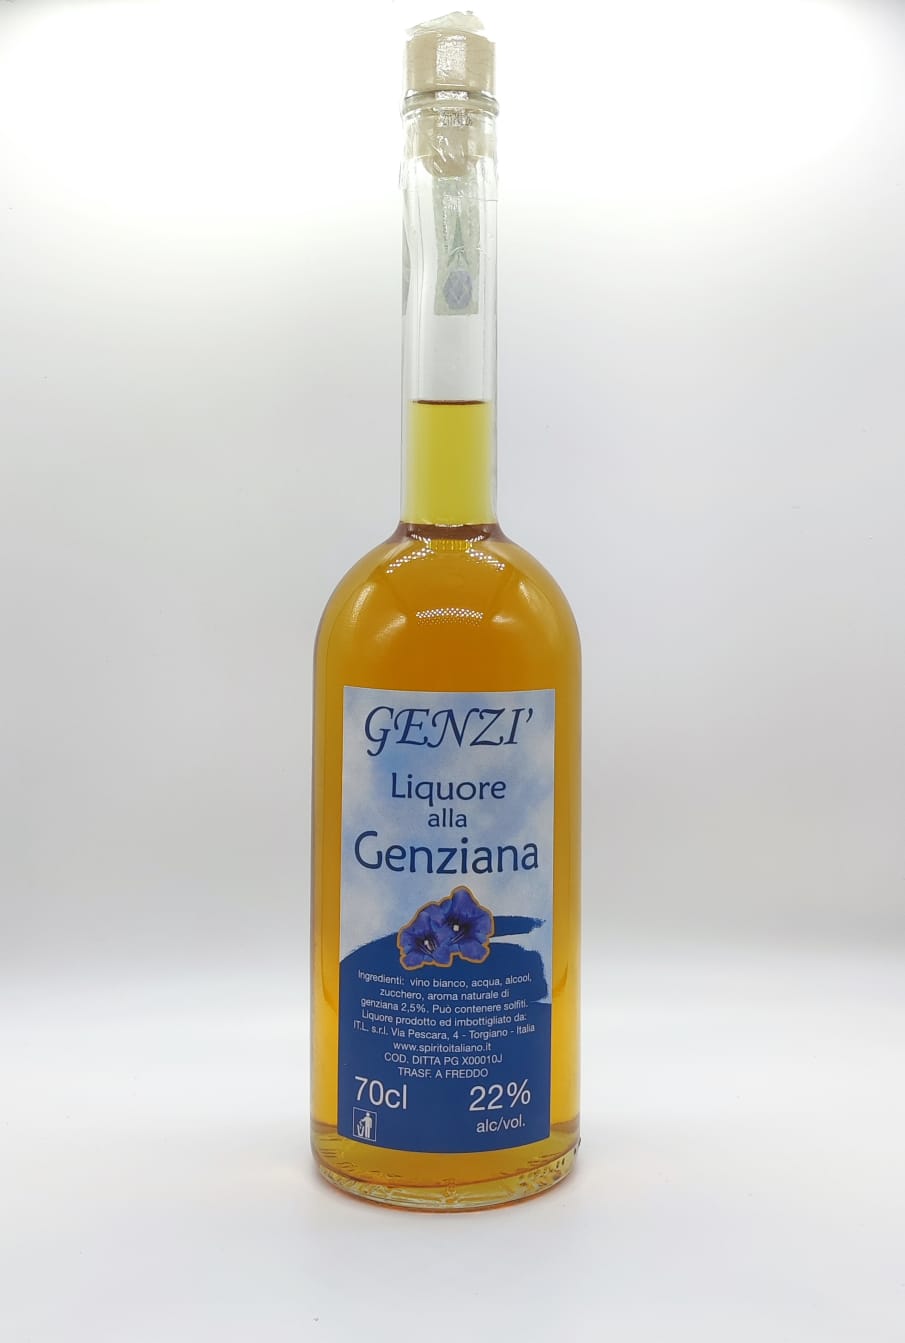 Genzì - Liquore alla Genziana 70cl